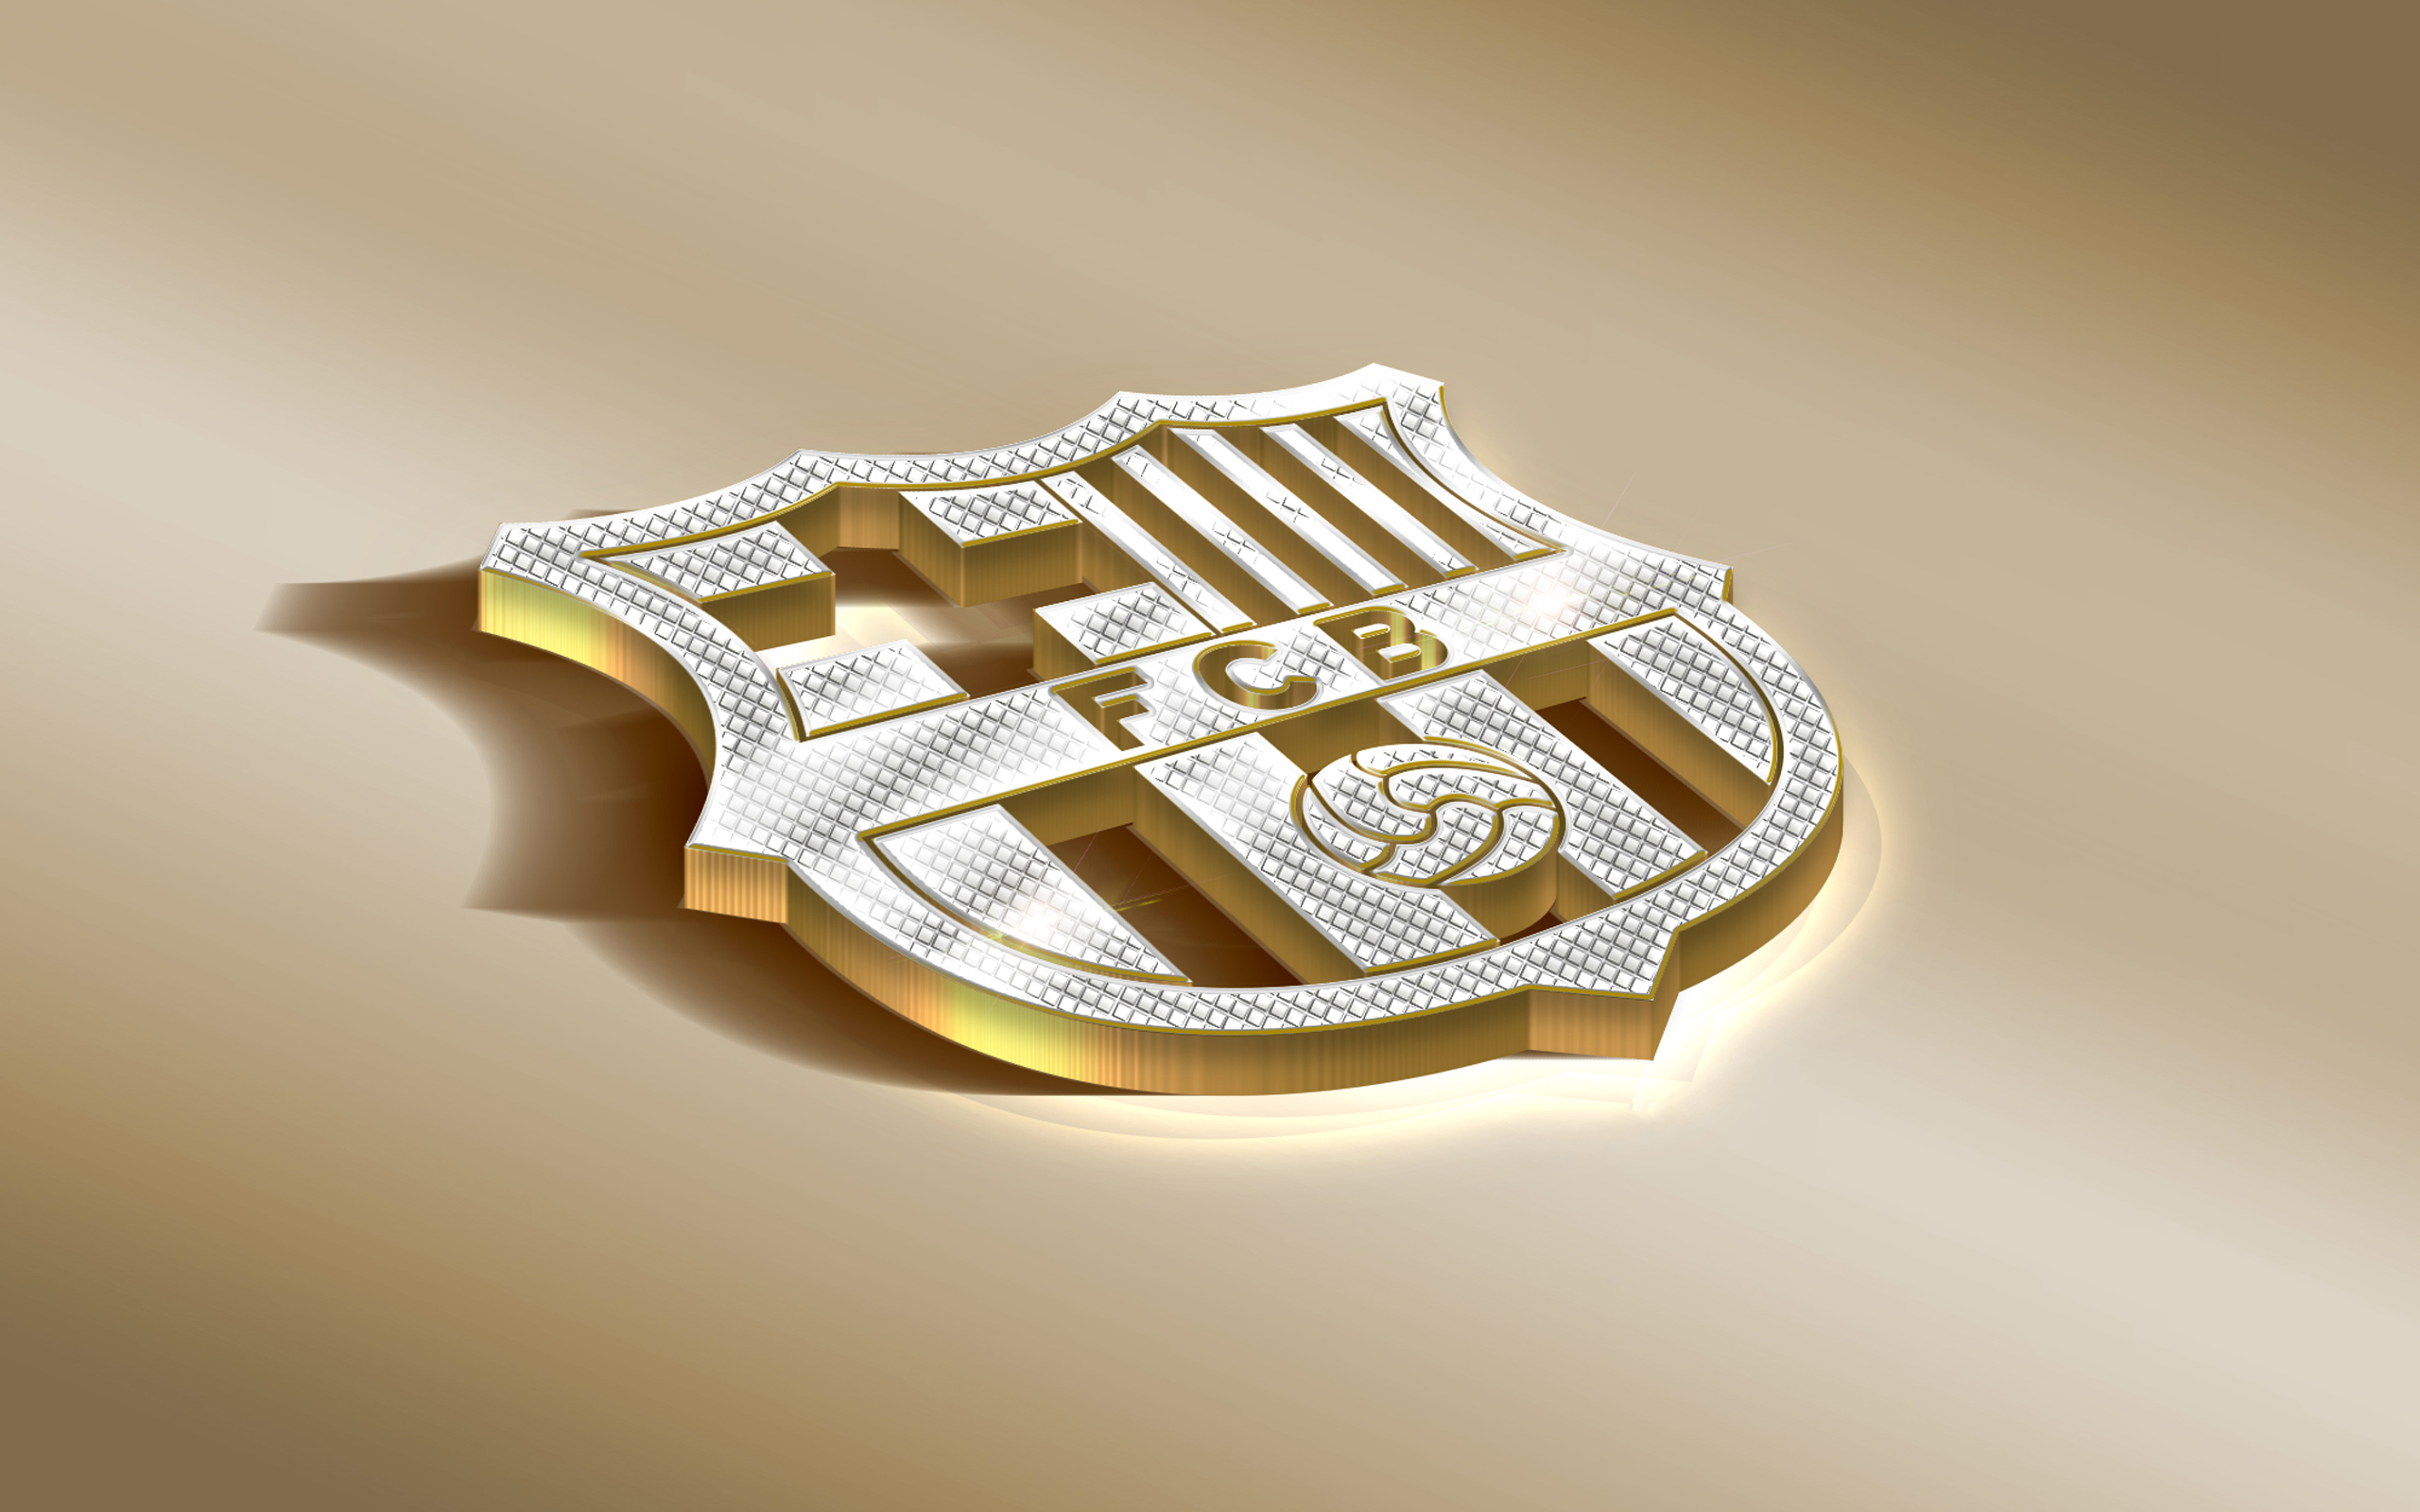 Baixe gratuitamente a imagem Esportes, Futebol, Logotipo, Fc Barcelona na área de trabalho do seu PC